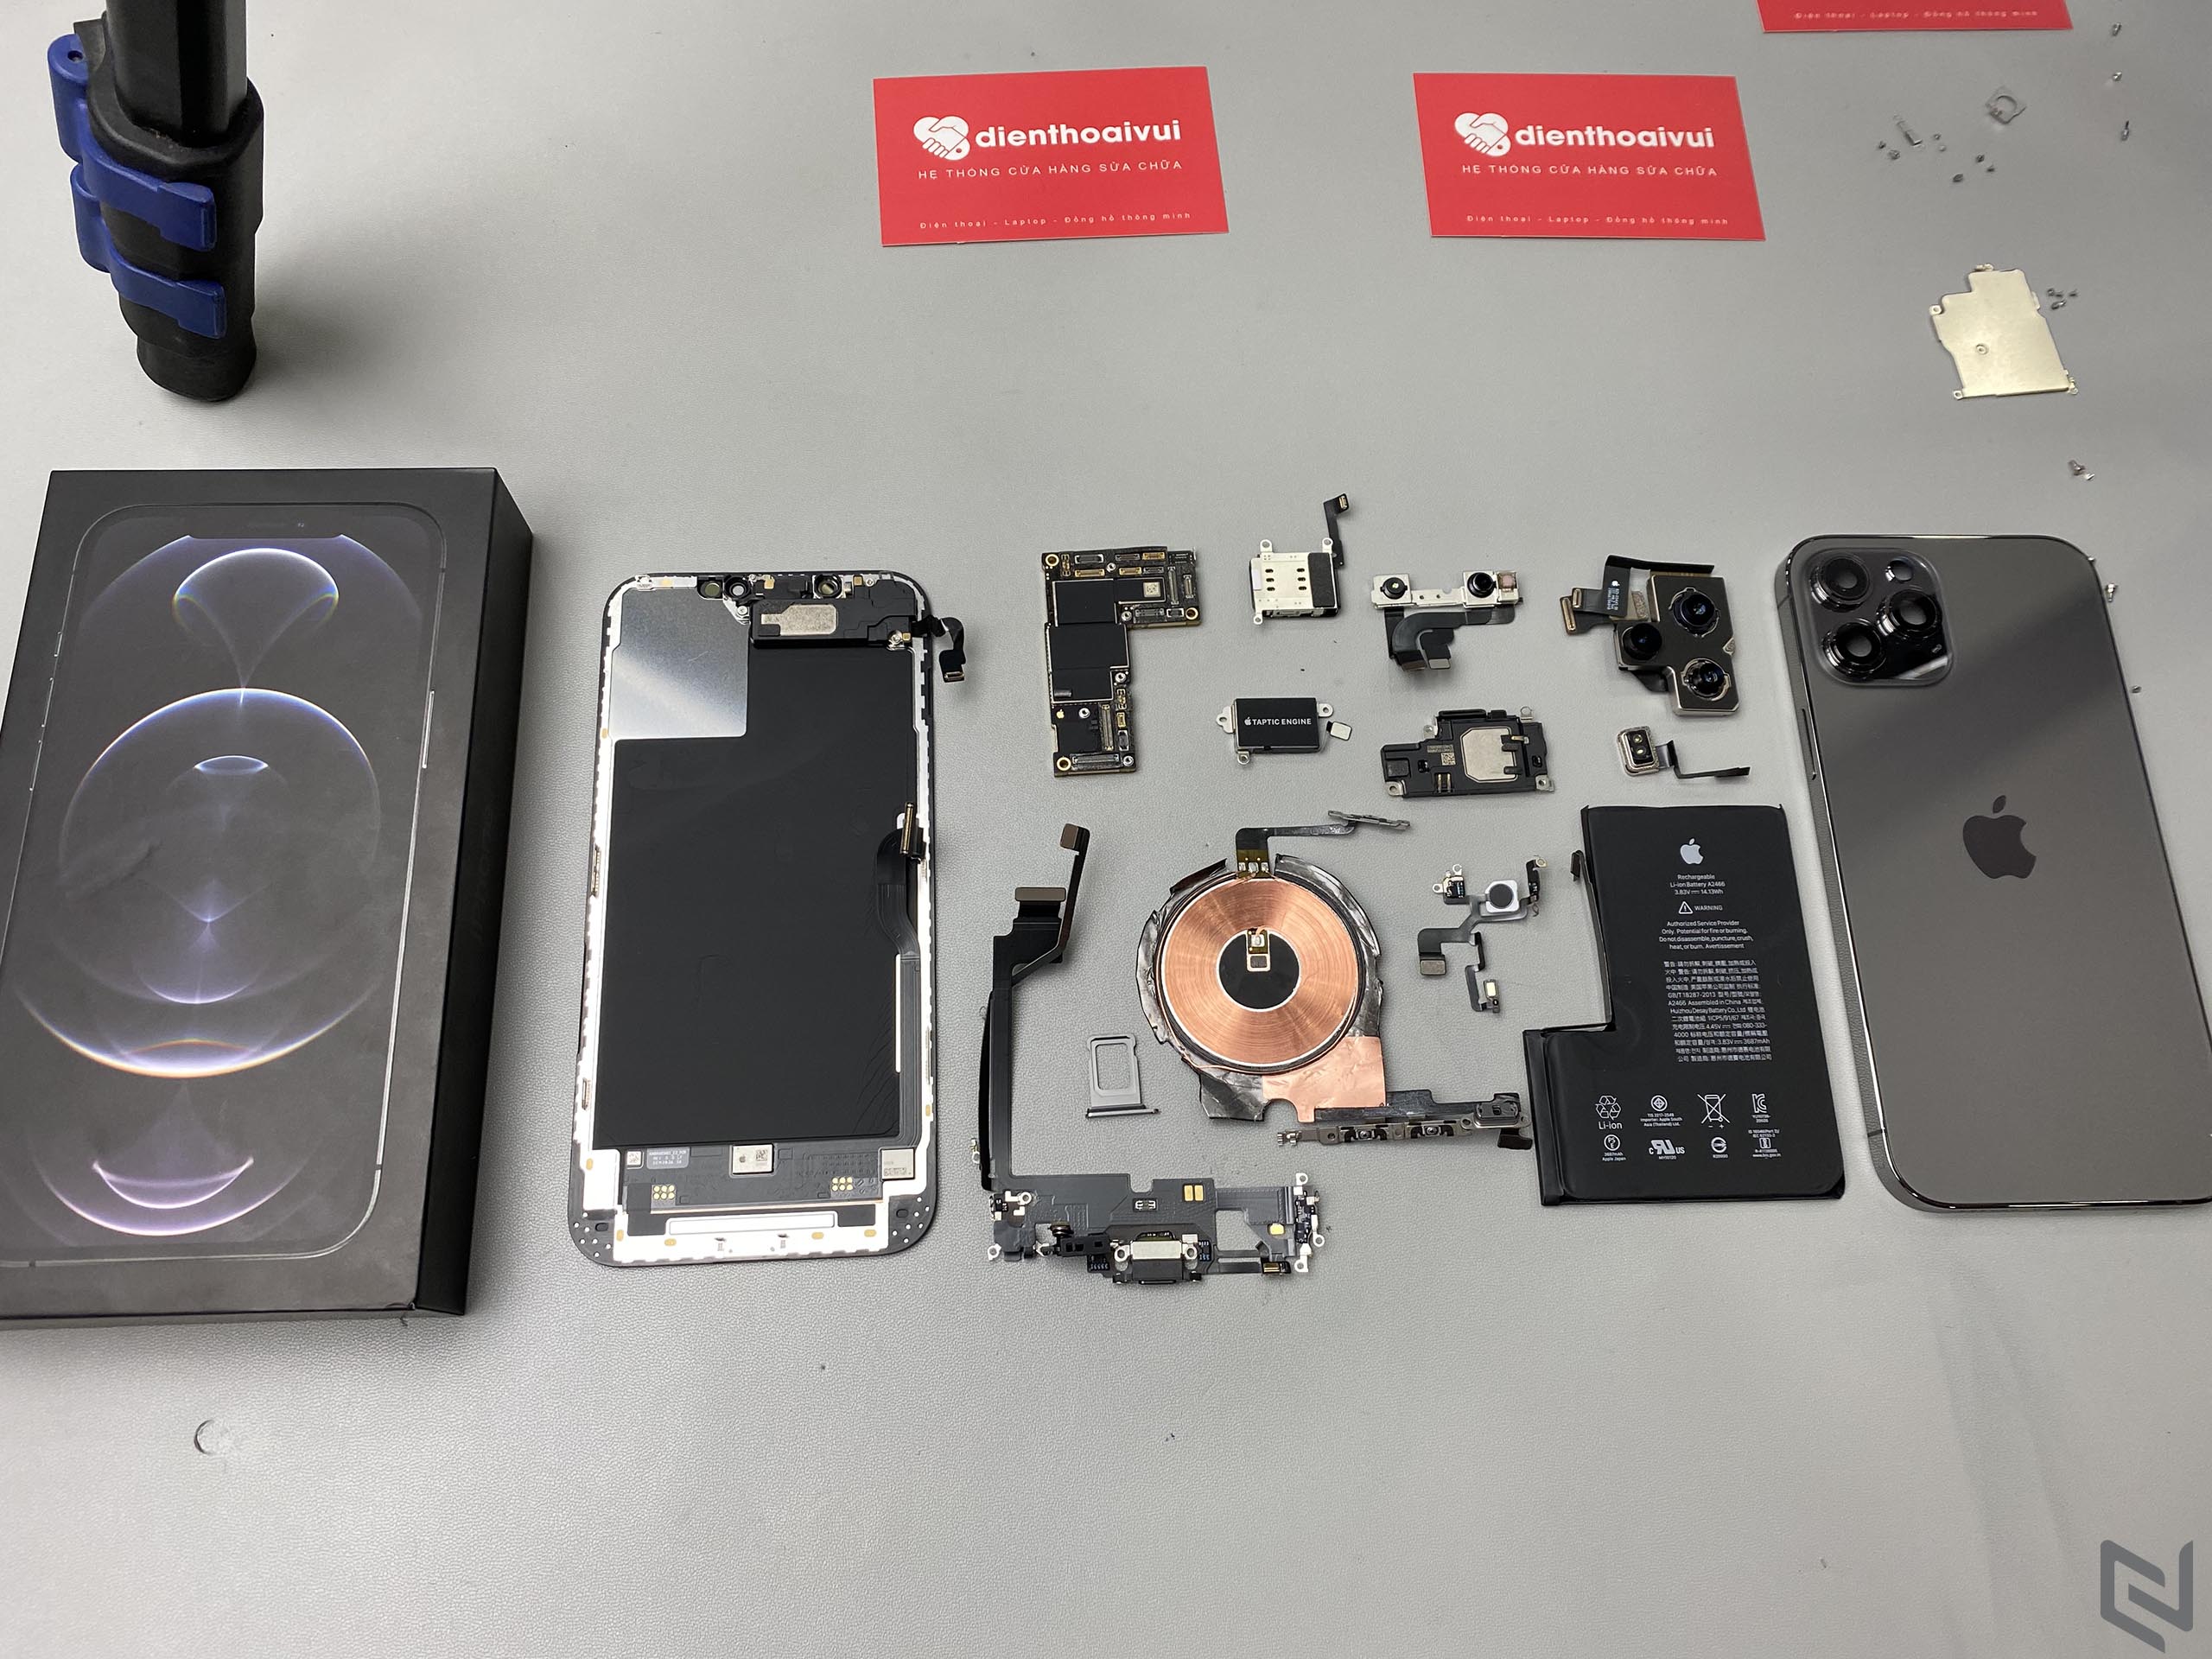 Khám phá nội thất iPhone 12 Pro Max vừa về Việt Nam cùng Điện Thoại Vui